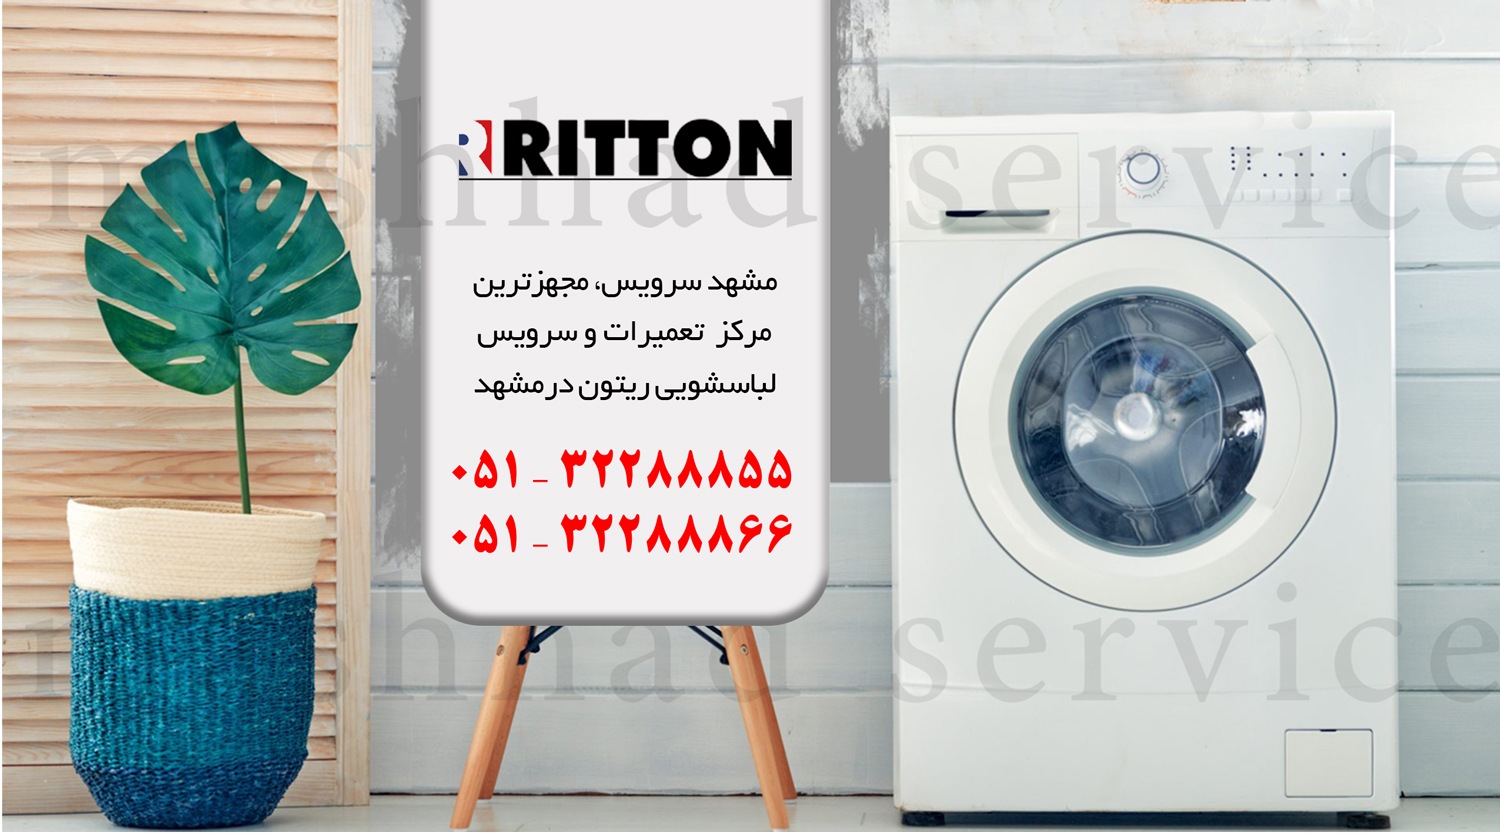 تعمیر ماشین لباسشویی ریتون در مشهد